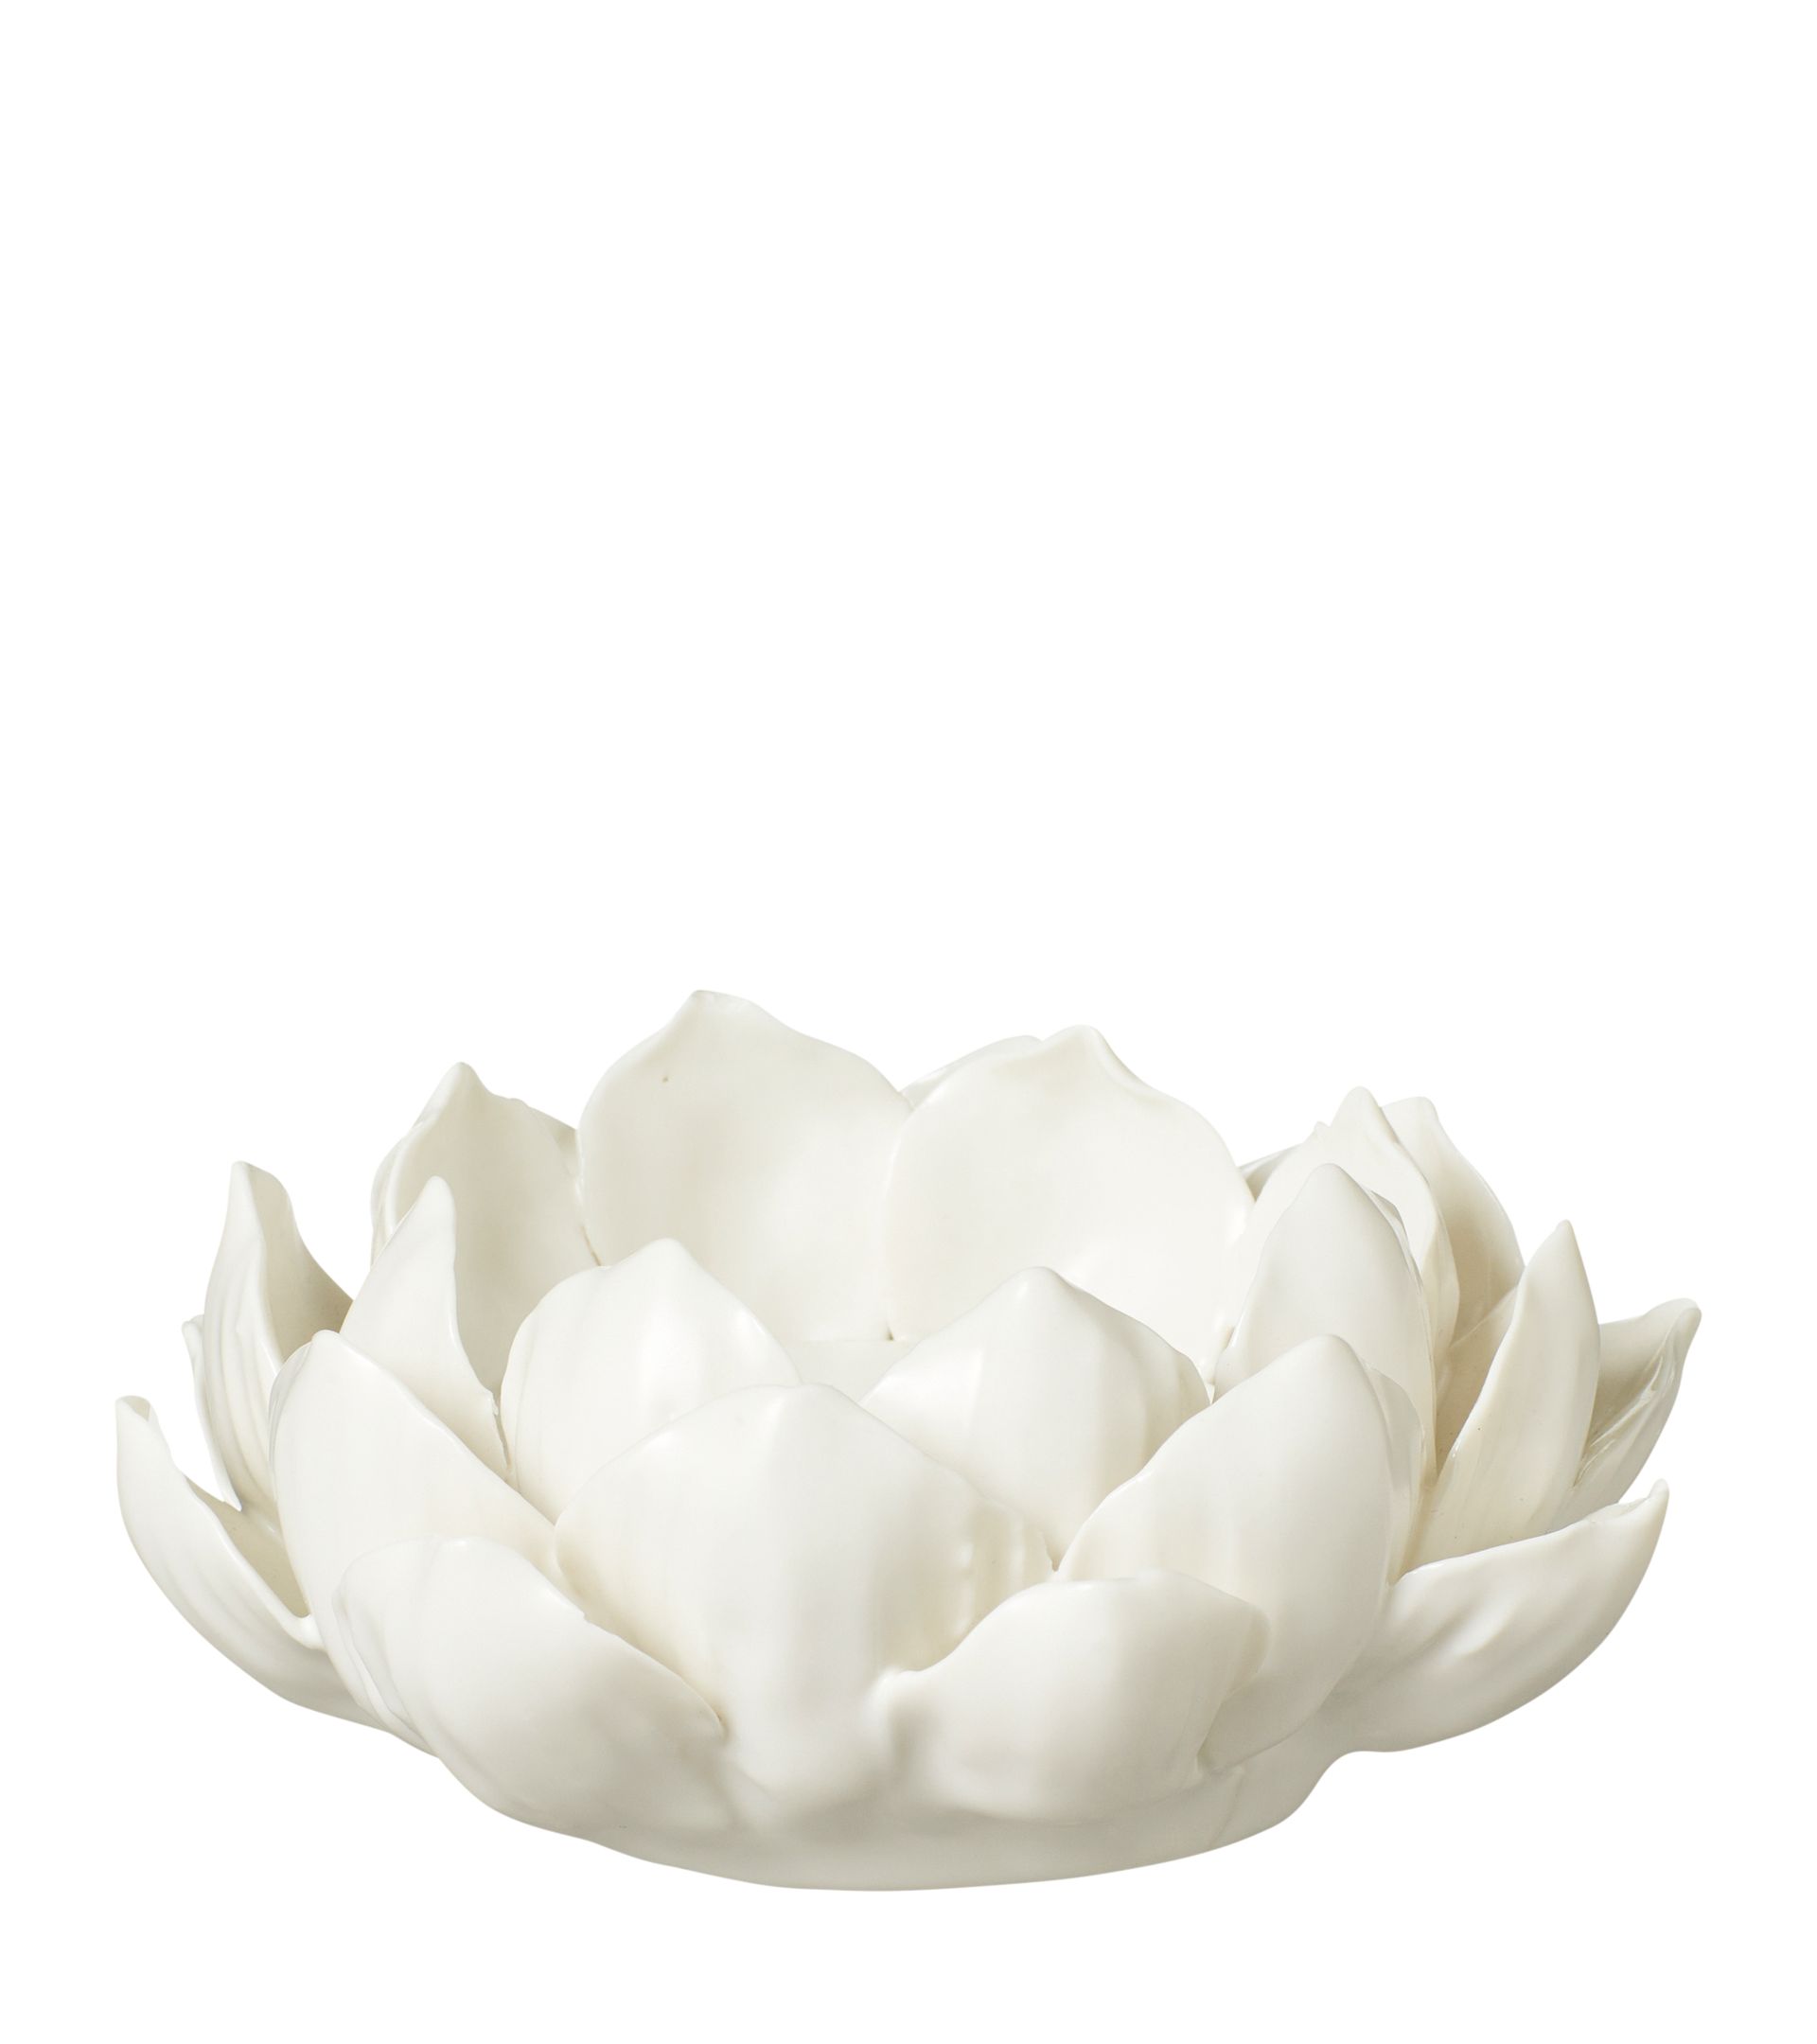 Porcelain Artichoke Candle Holder - White | OKA US